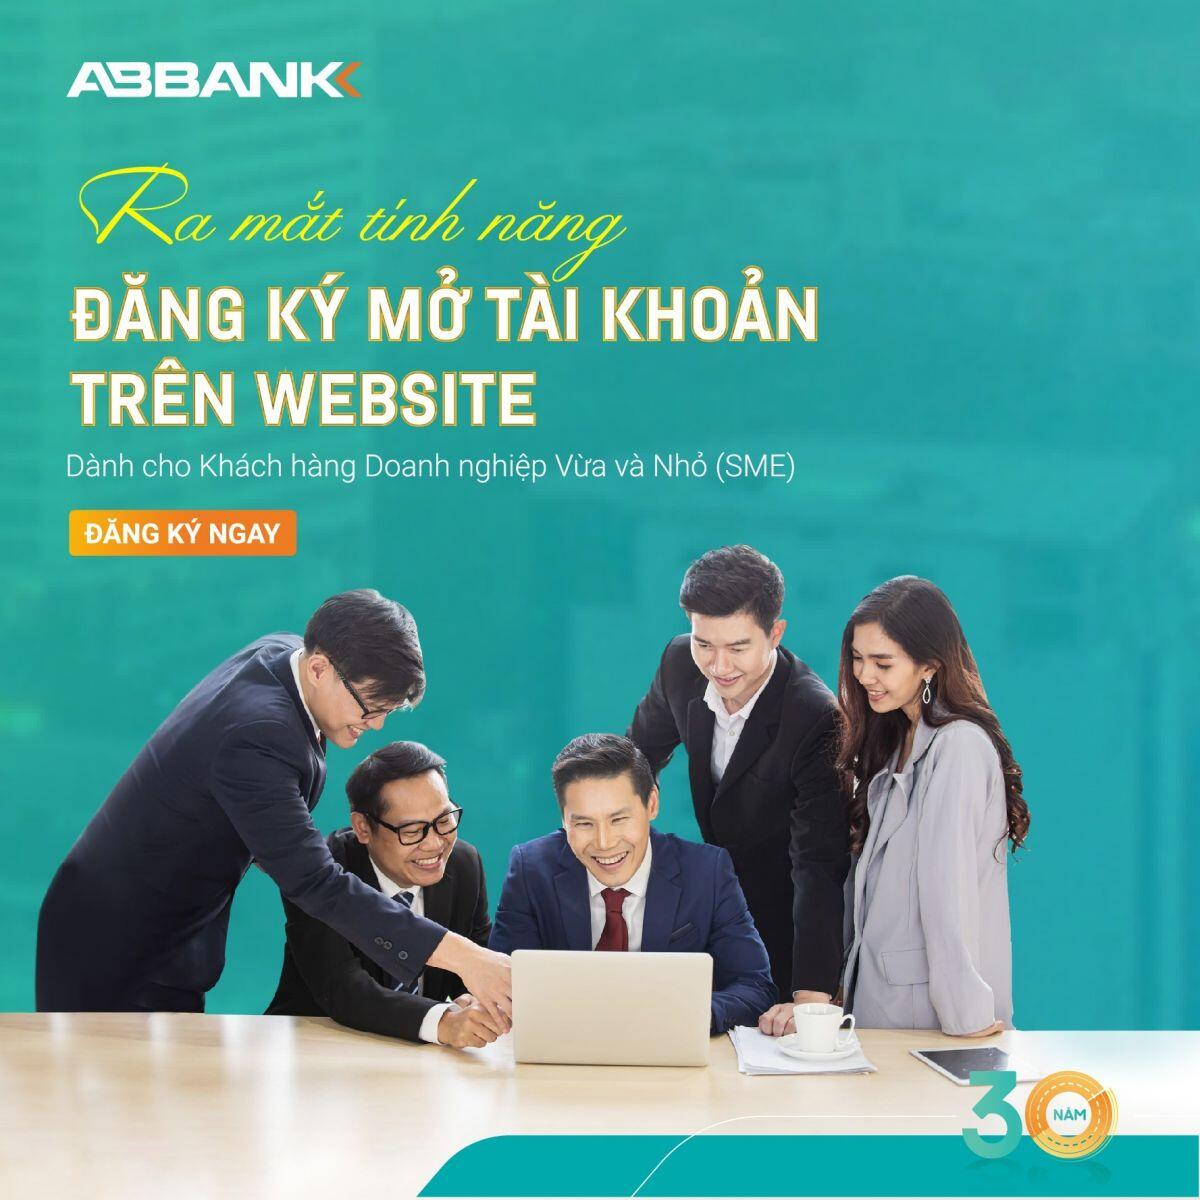 Khách hàng SMEs có thể đăng ký mở tài khoản thanh toán tại ABBANK ngay trên website